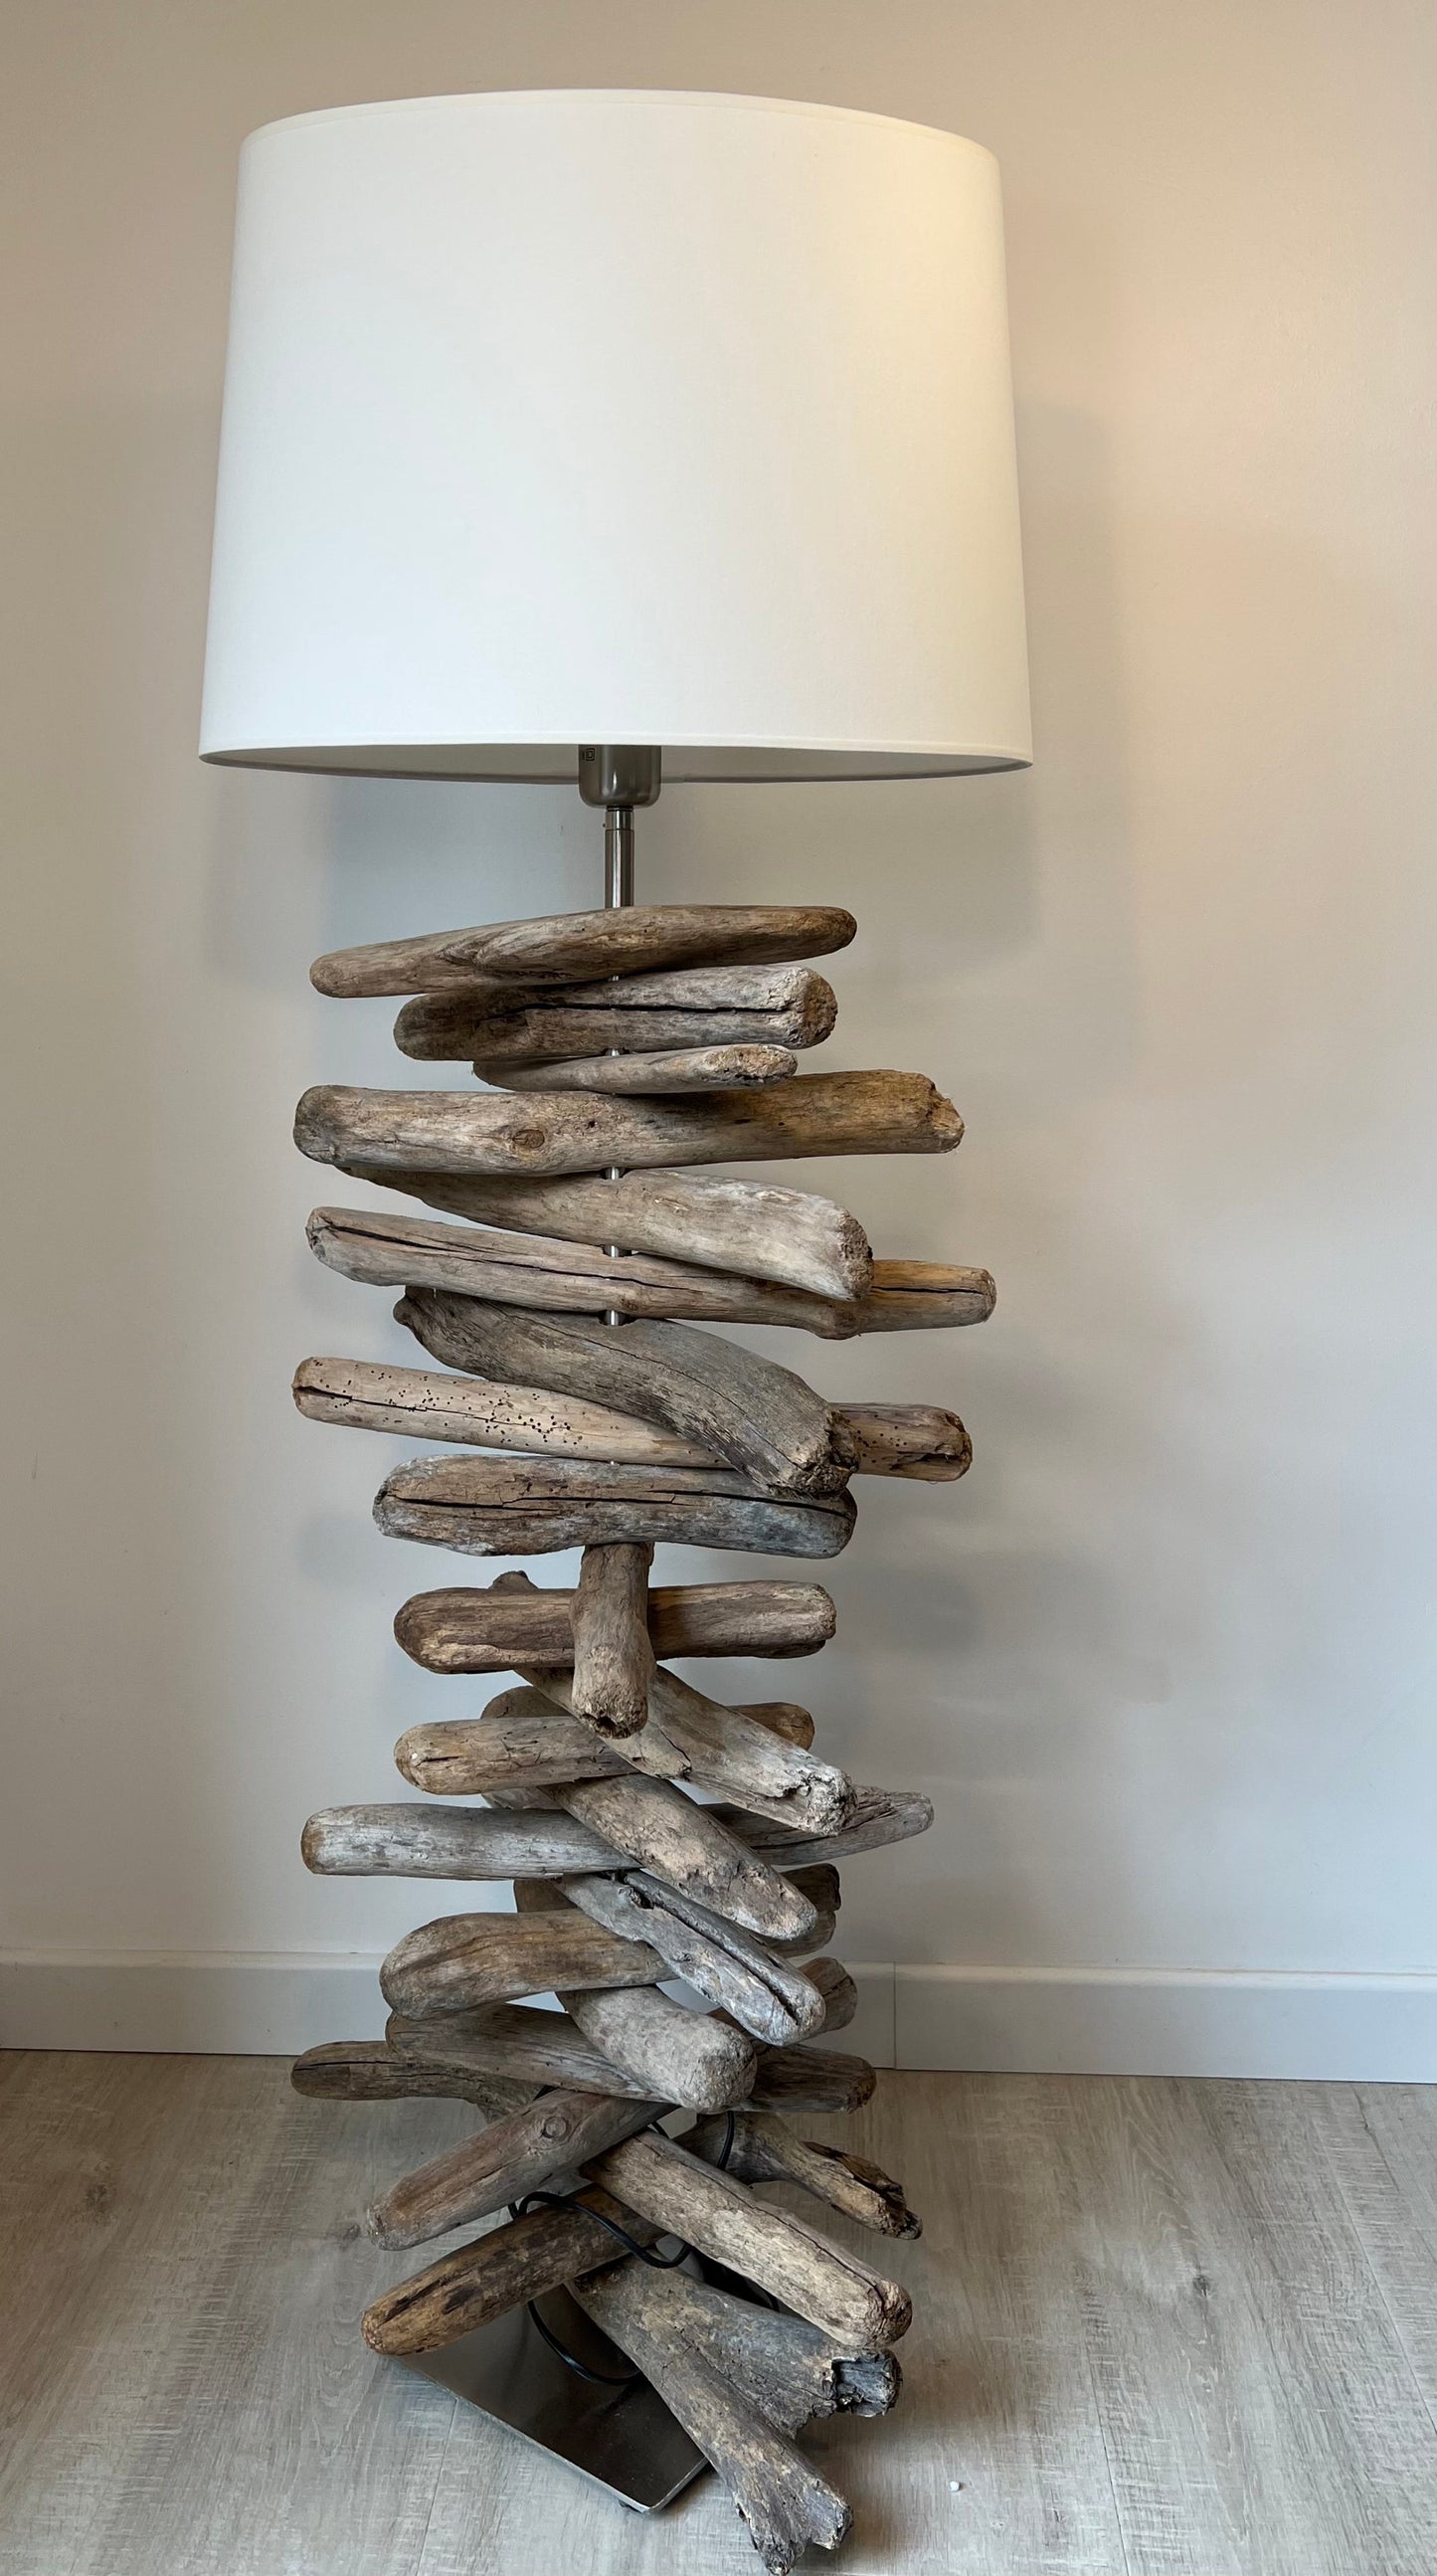 WIDE DRIFTWOOD - Grande lampe en bois flotté et abat-jour blanc lampe sur pied B&Inside 